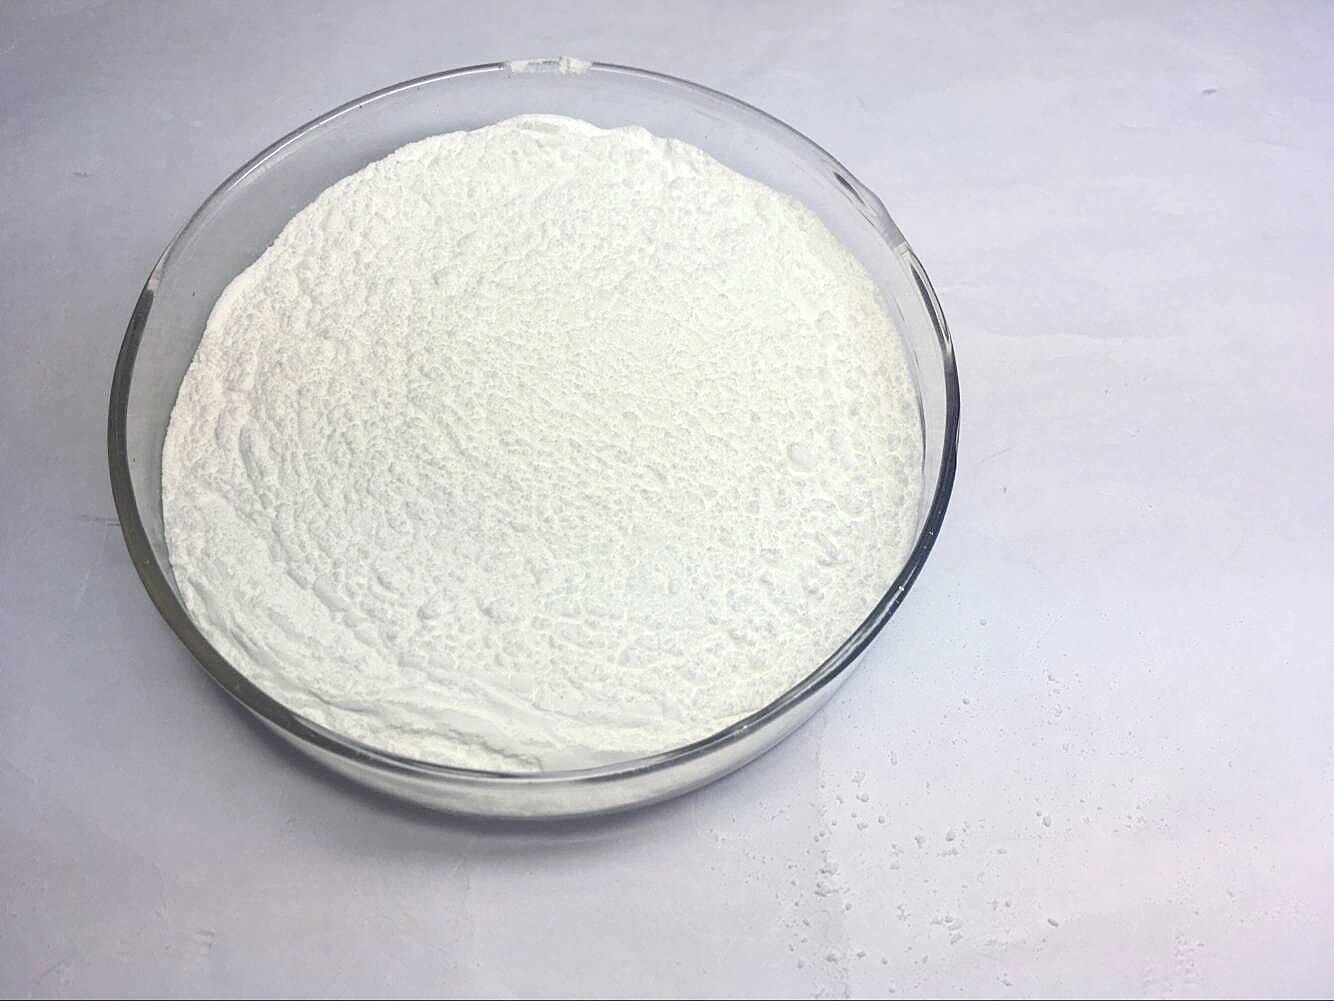 微晶纤维素 PH101,Microcrystalline cellulose